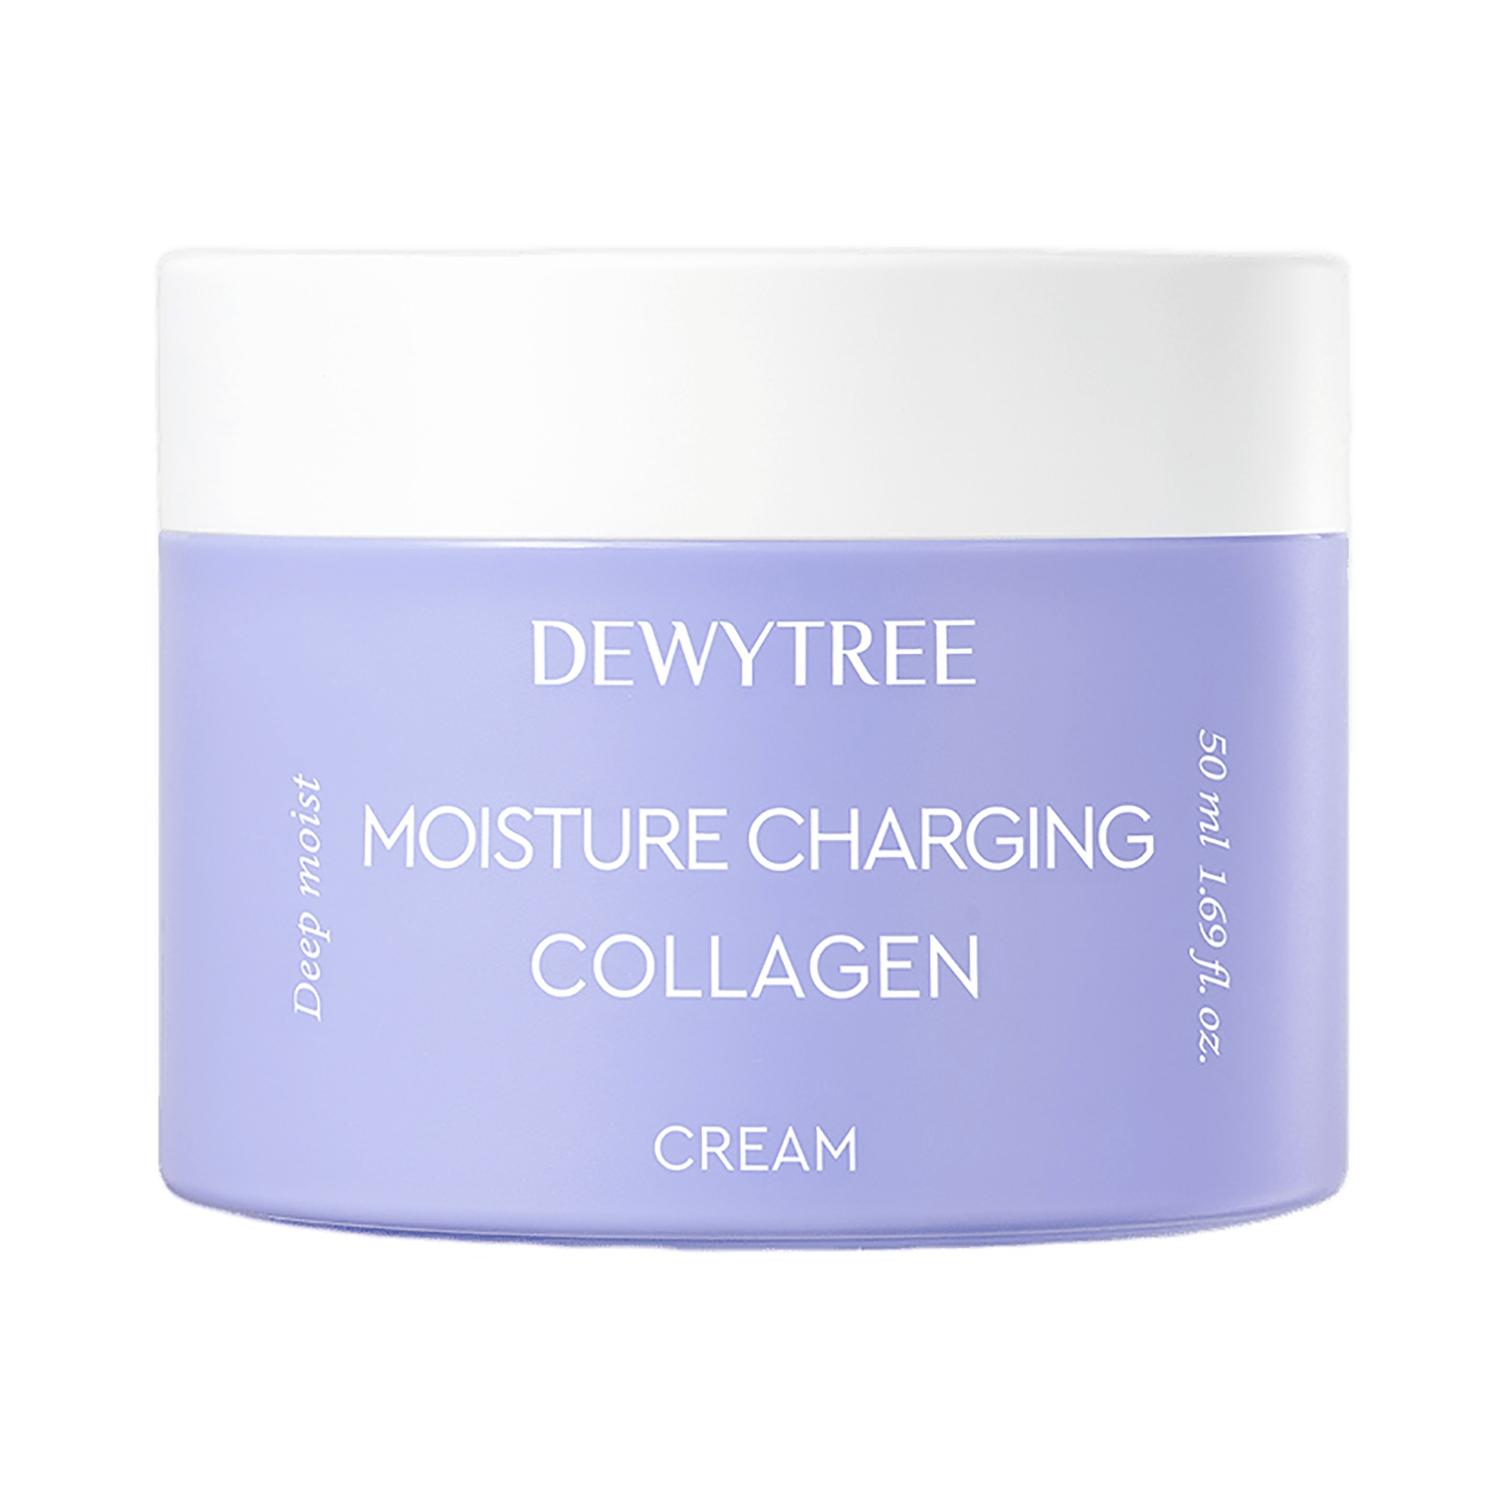 dewytree moisture charging collagen cream (50ml)